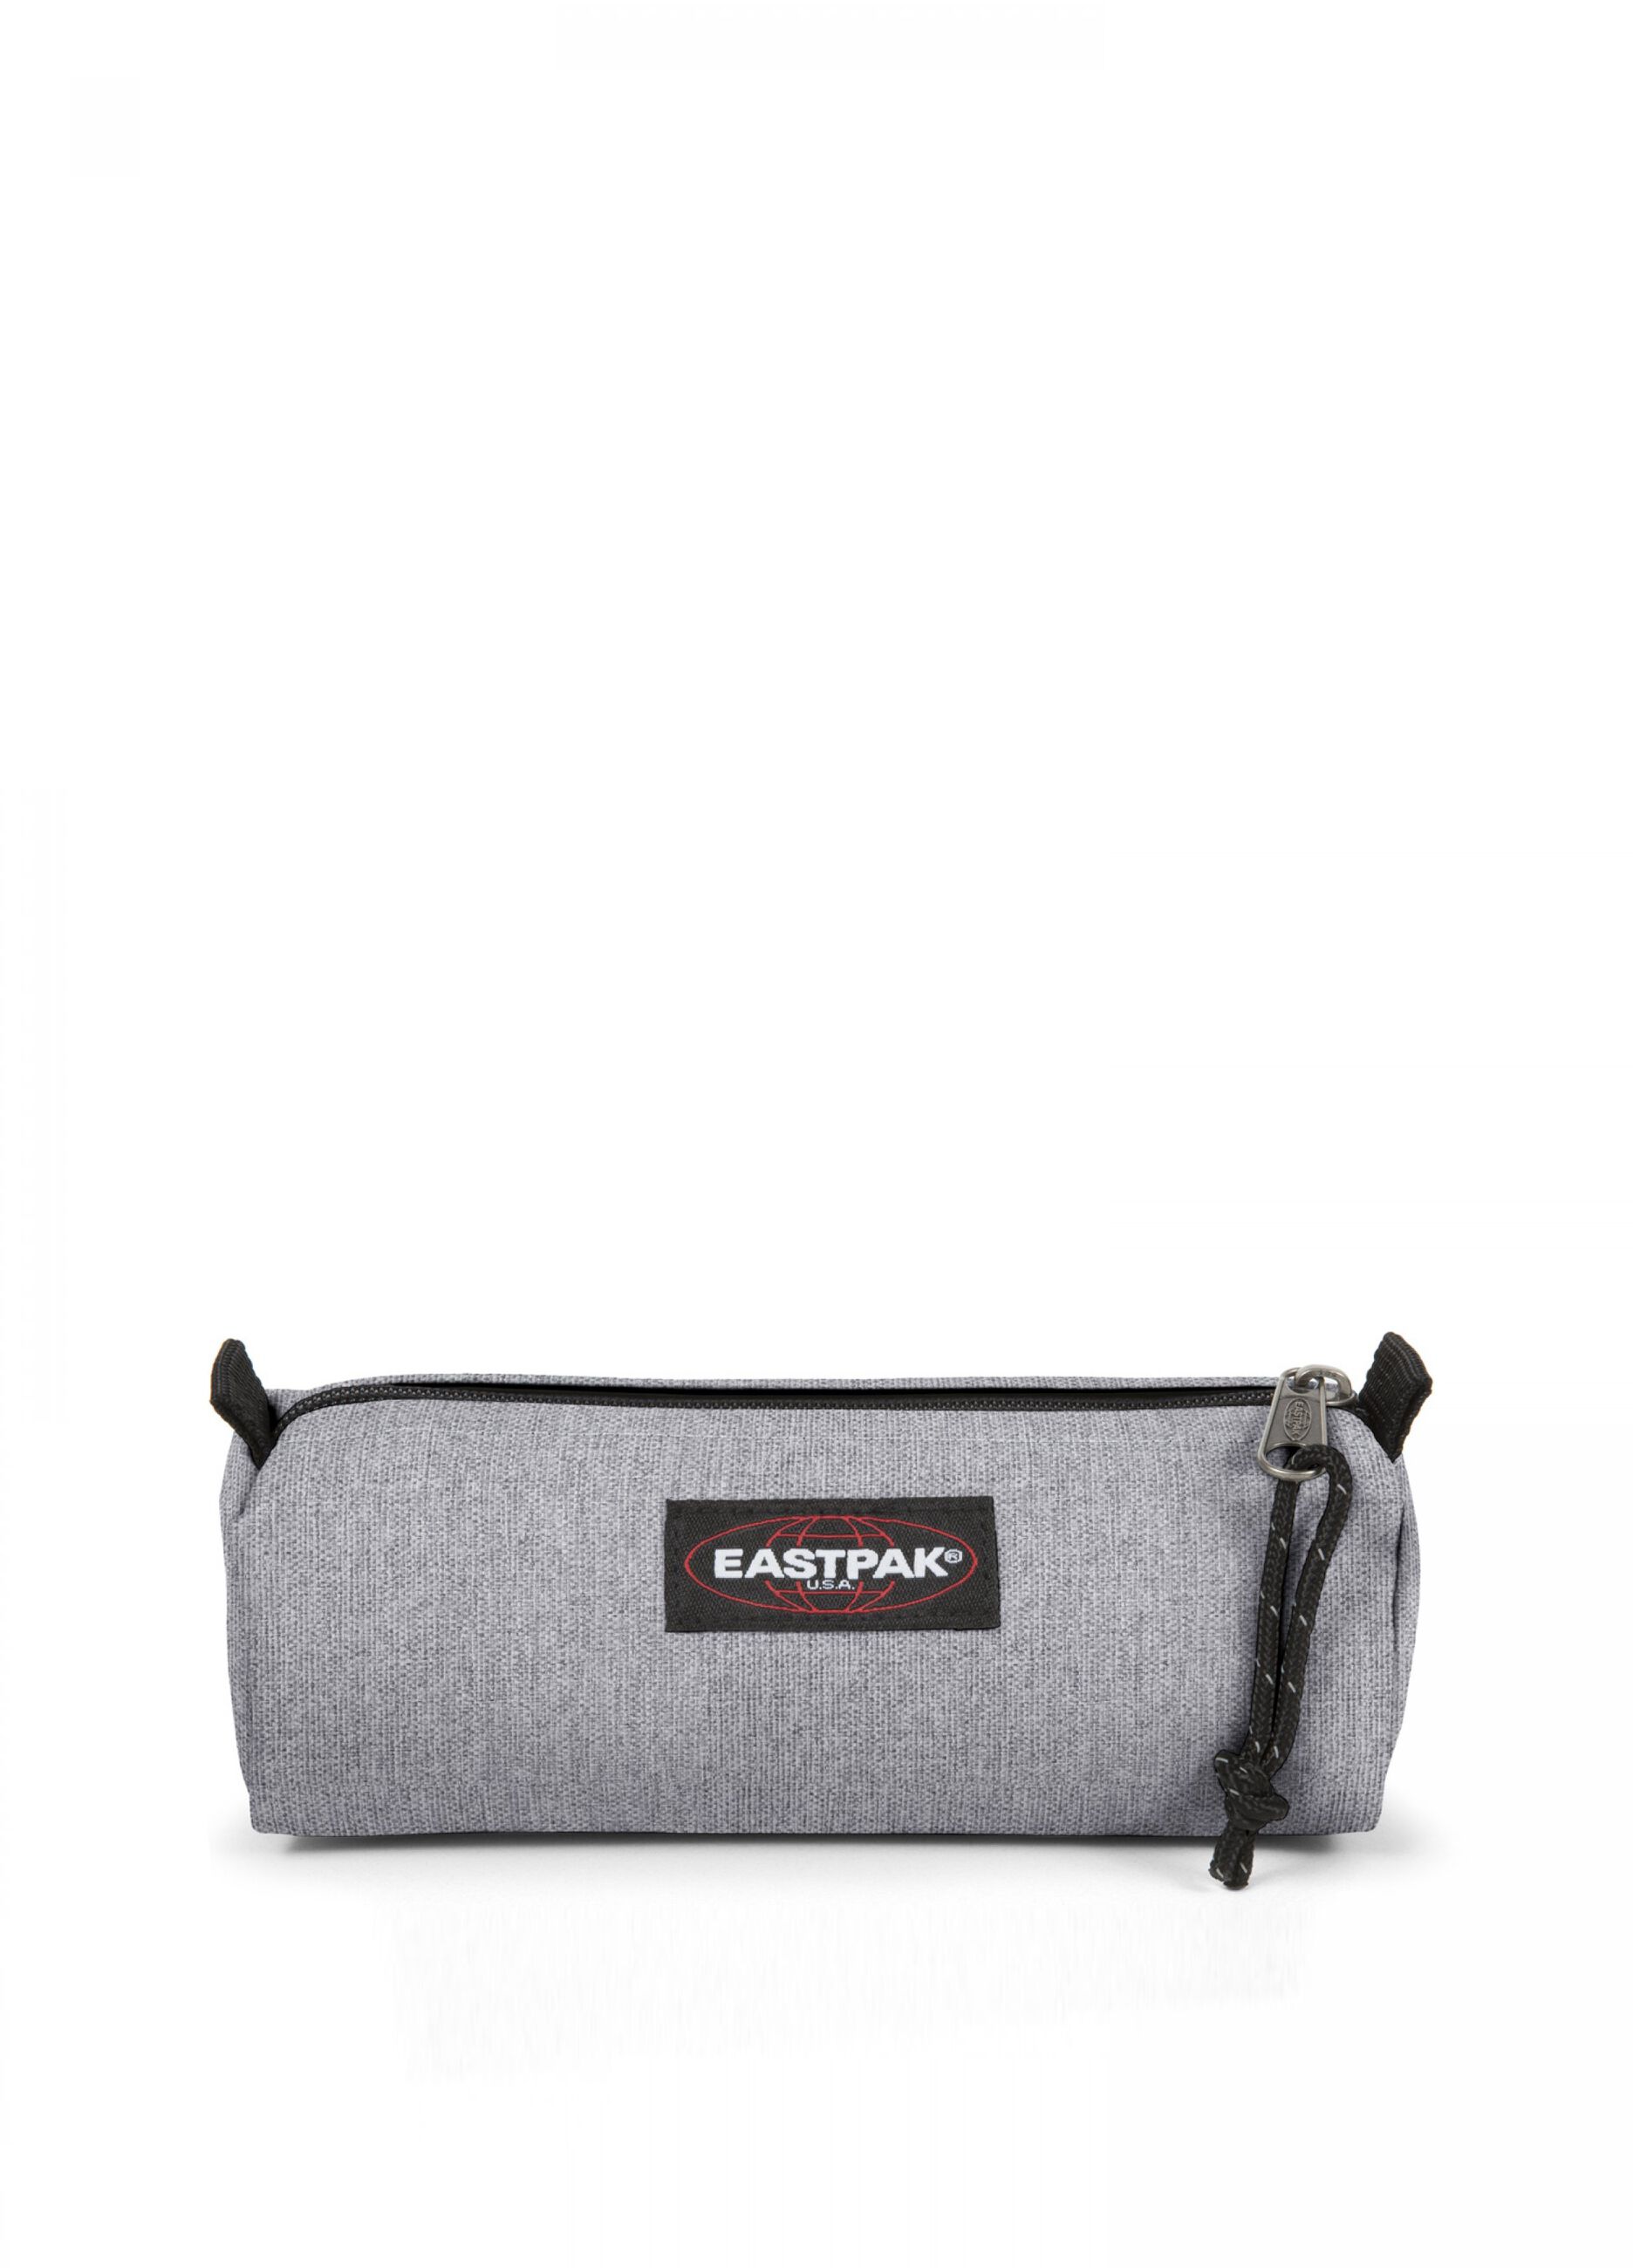 Eastpak pencil case